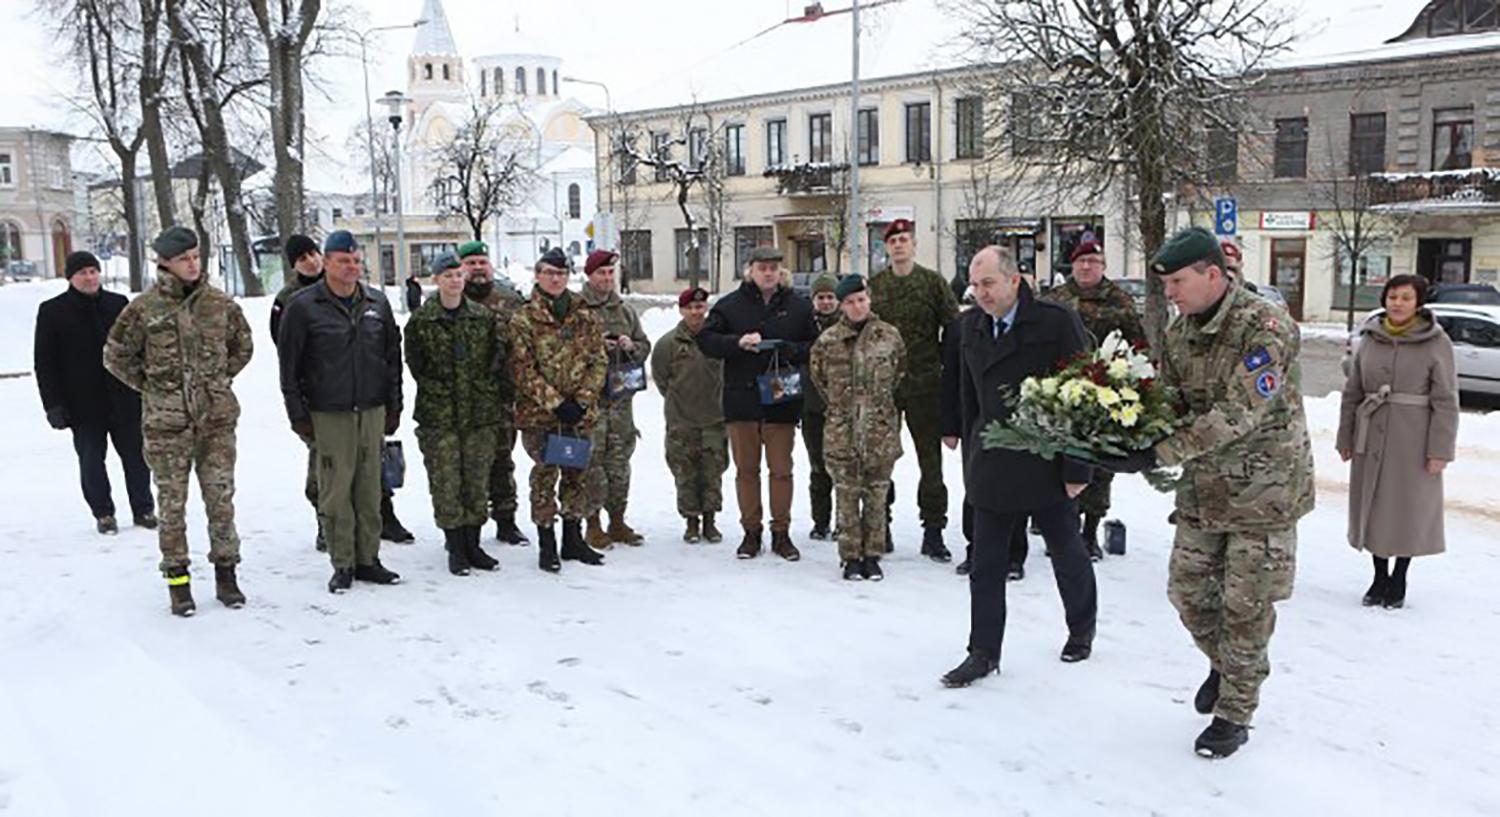 Lankėsi NATO pajėgų integravimo vieneto atstovai / Svečiai padėjo gėlių prie Laisvės paminklo.